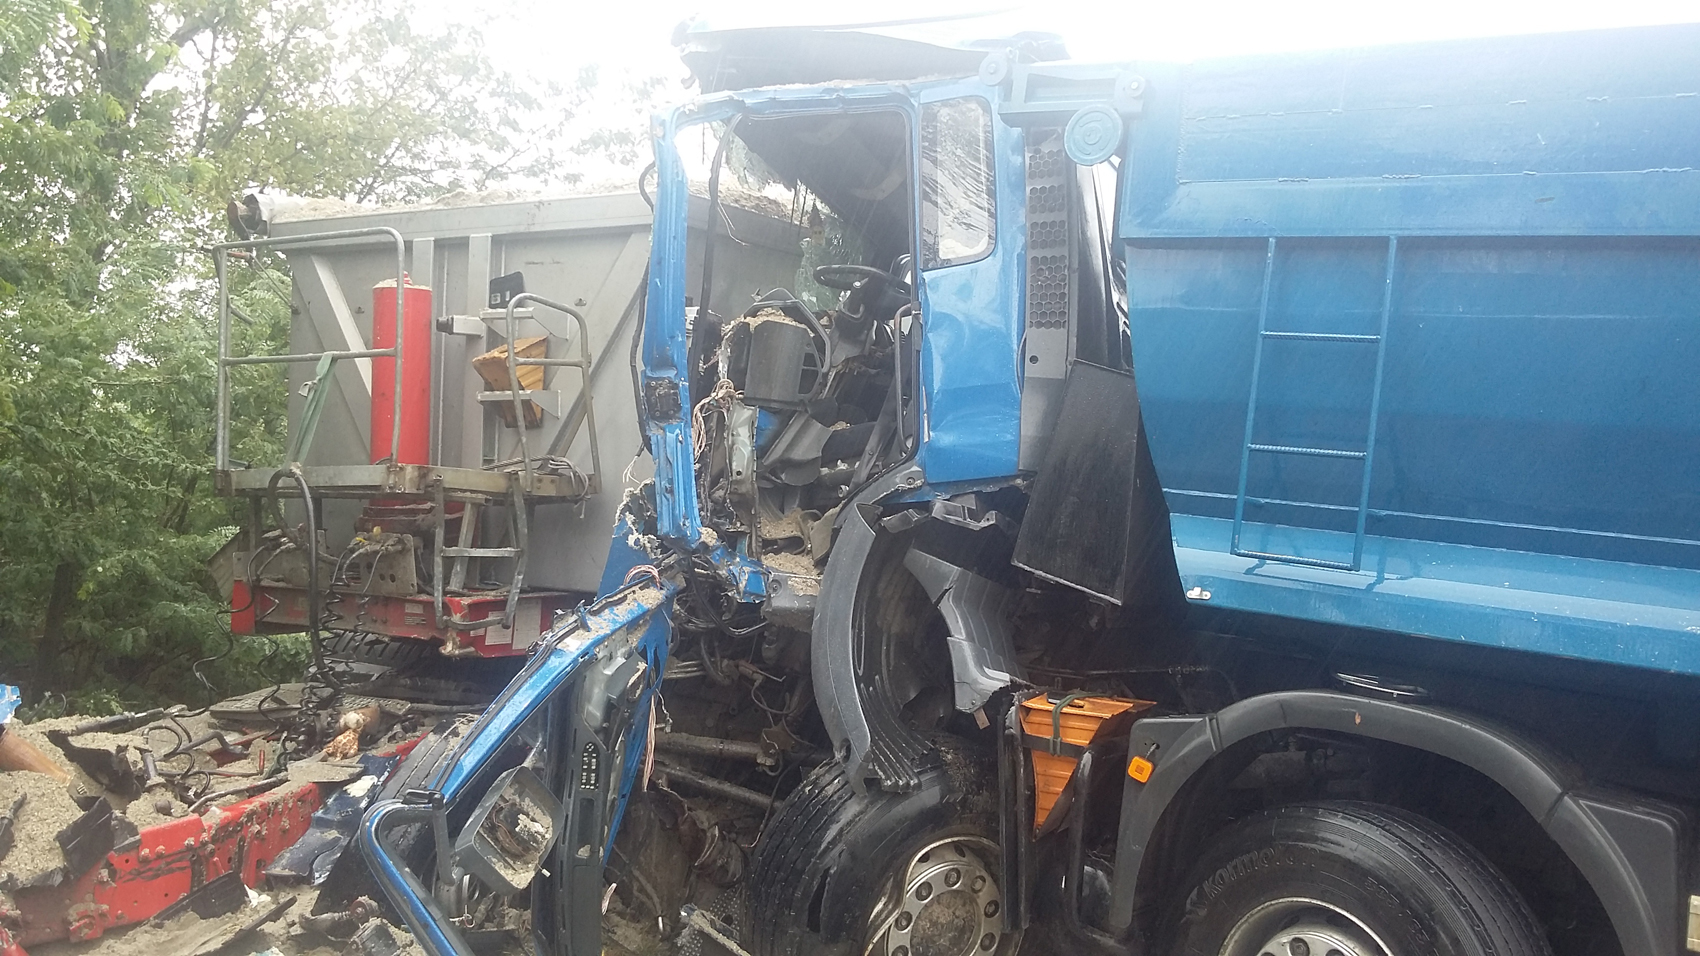 Szétszakad a kamion, beszorult a sofőr - Frontális teherautóbaleset  Taksonynál - Blikk